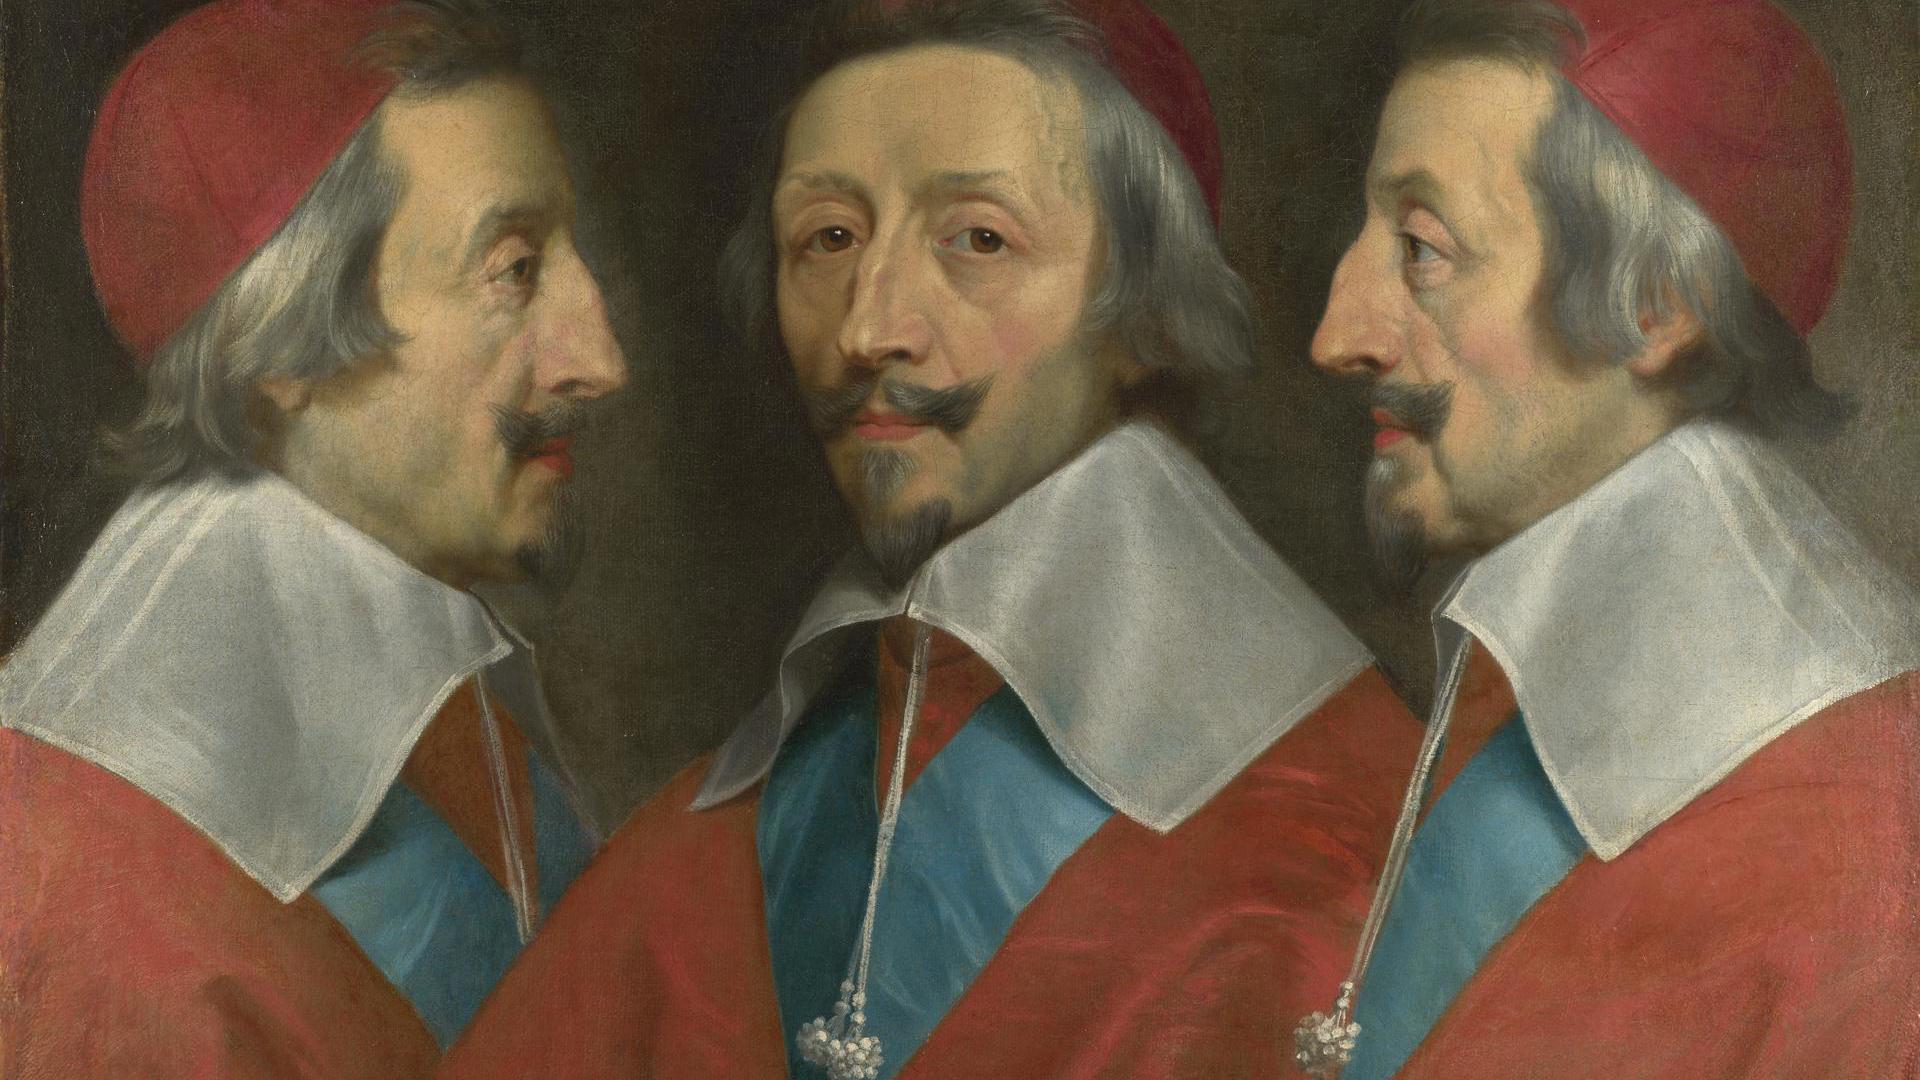 Triple Portrait of Cardinal de Richelieu by Philippe de Champaigne and studio